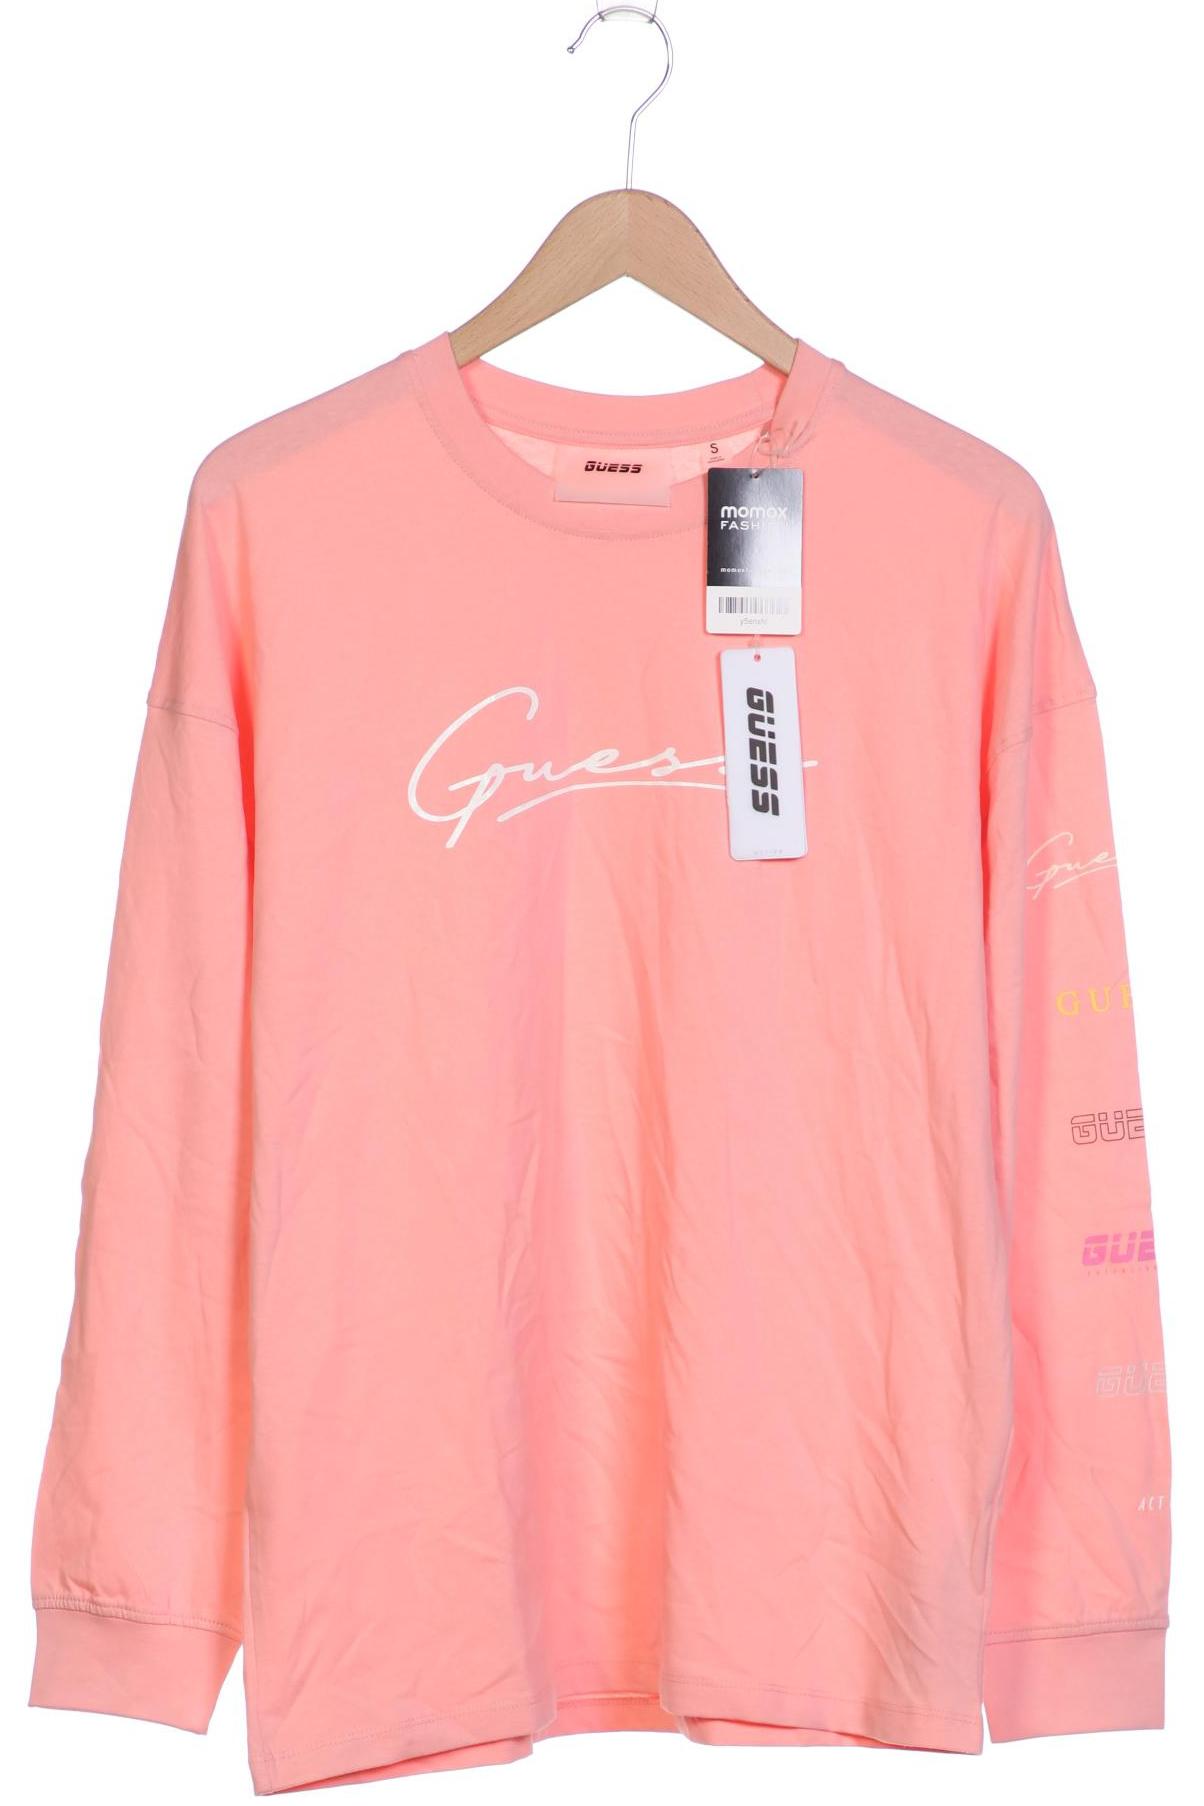 Guess Damen Langarmshirt, pink, Gr. 36 von Guess